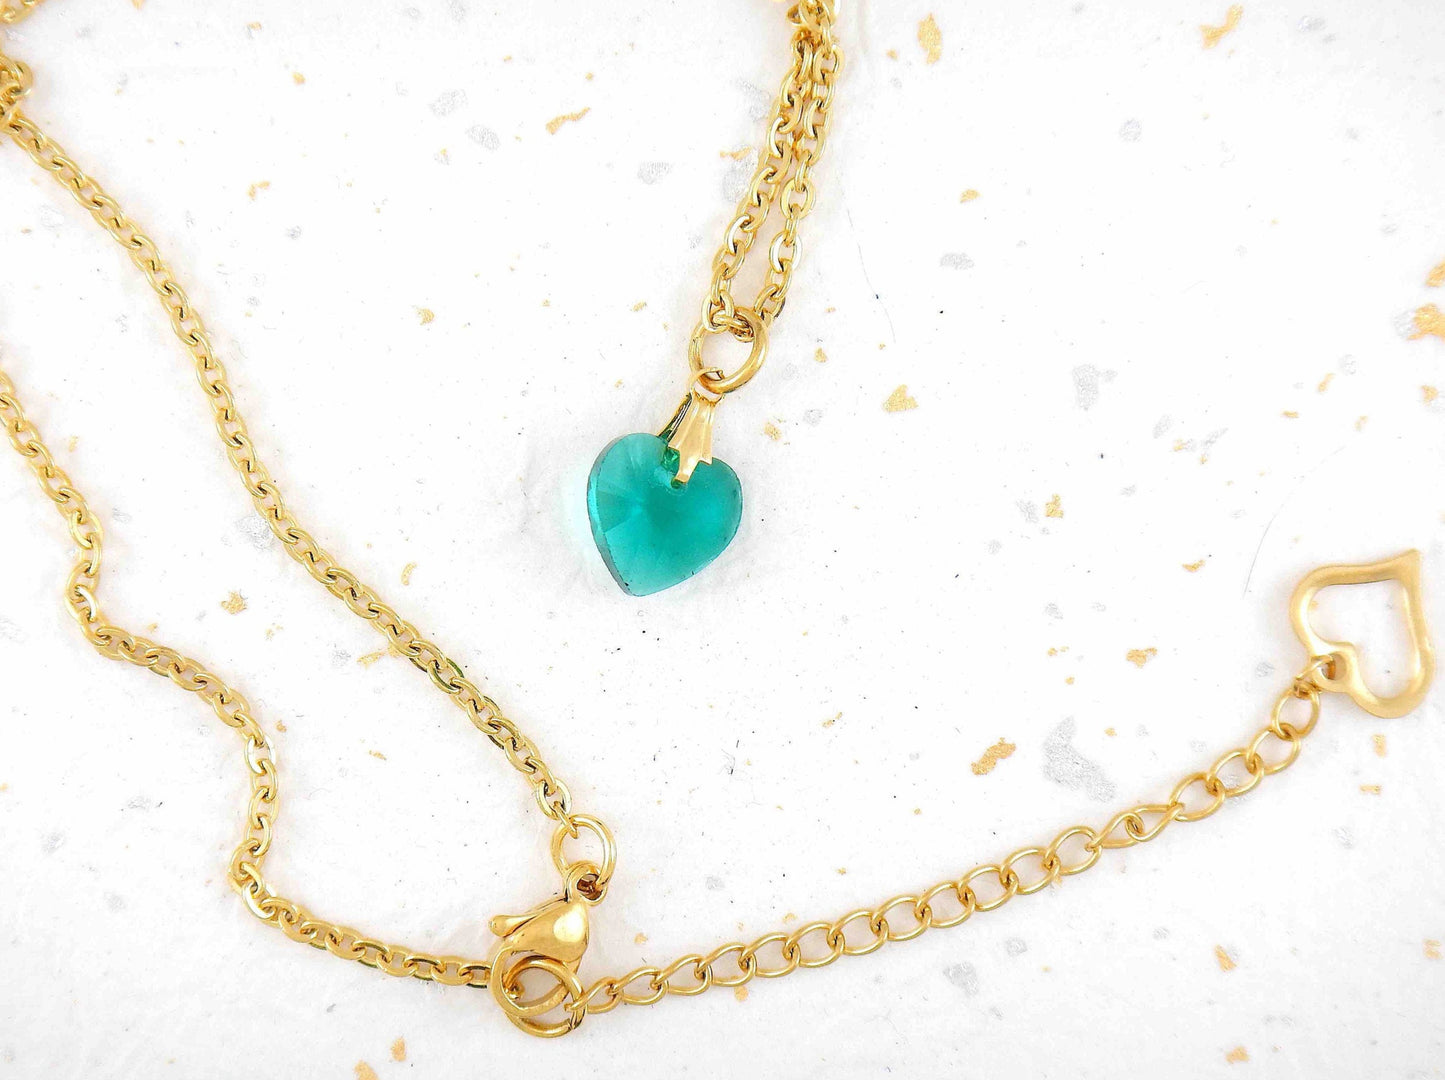 Collier 15 po à pendentif coeur de cristal Swarovski turquoise facetté 10mm, chaîne acier inoxydable